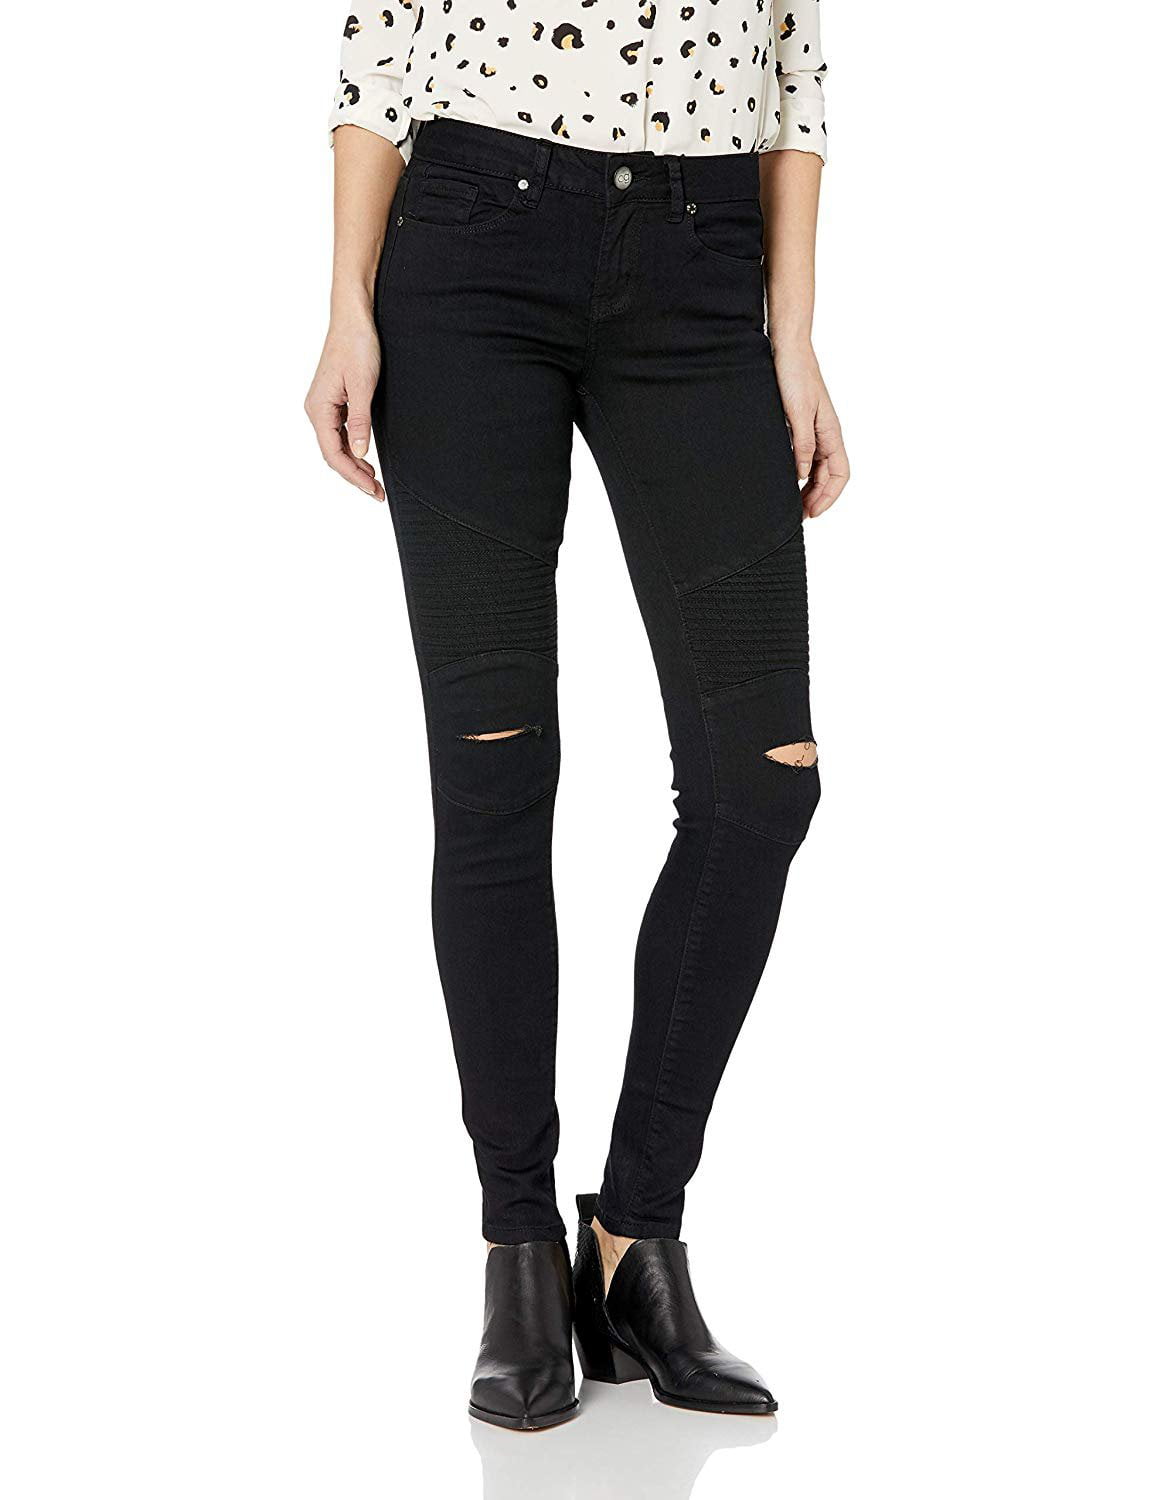 high waist black jeans for girls